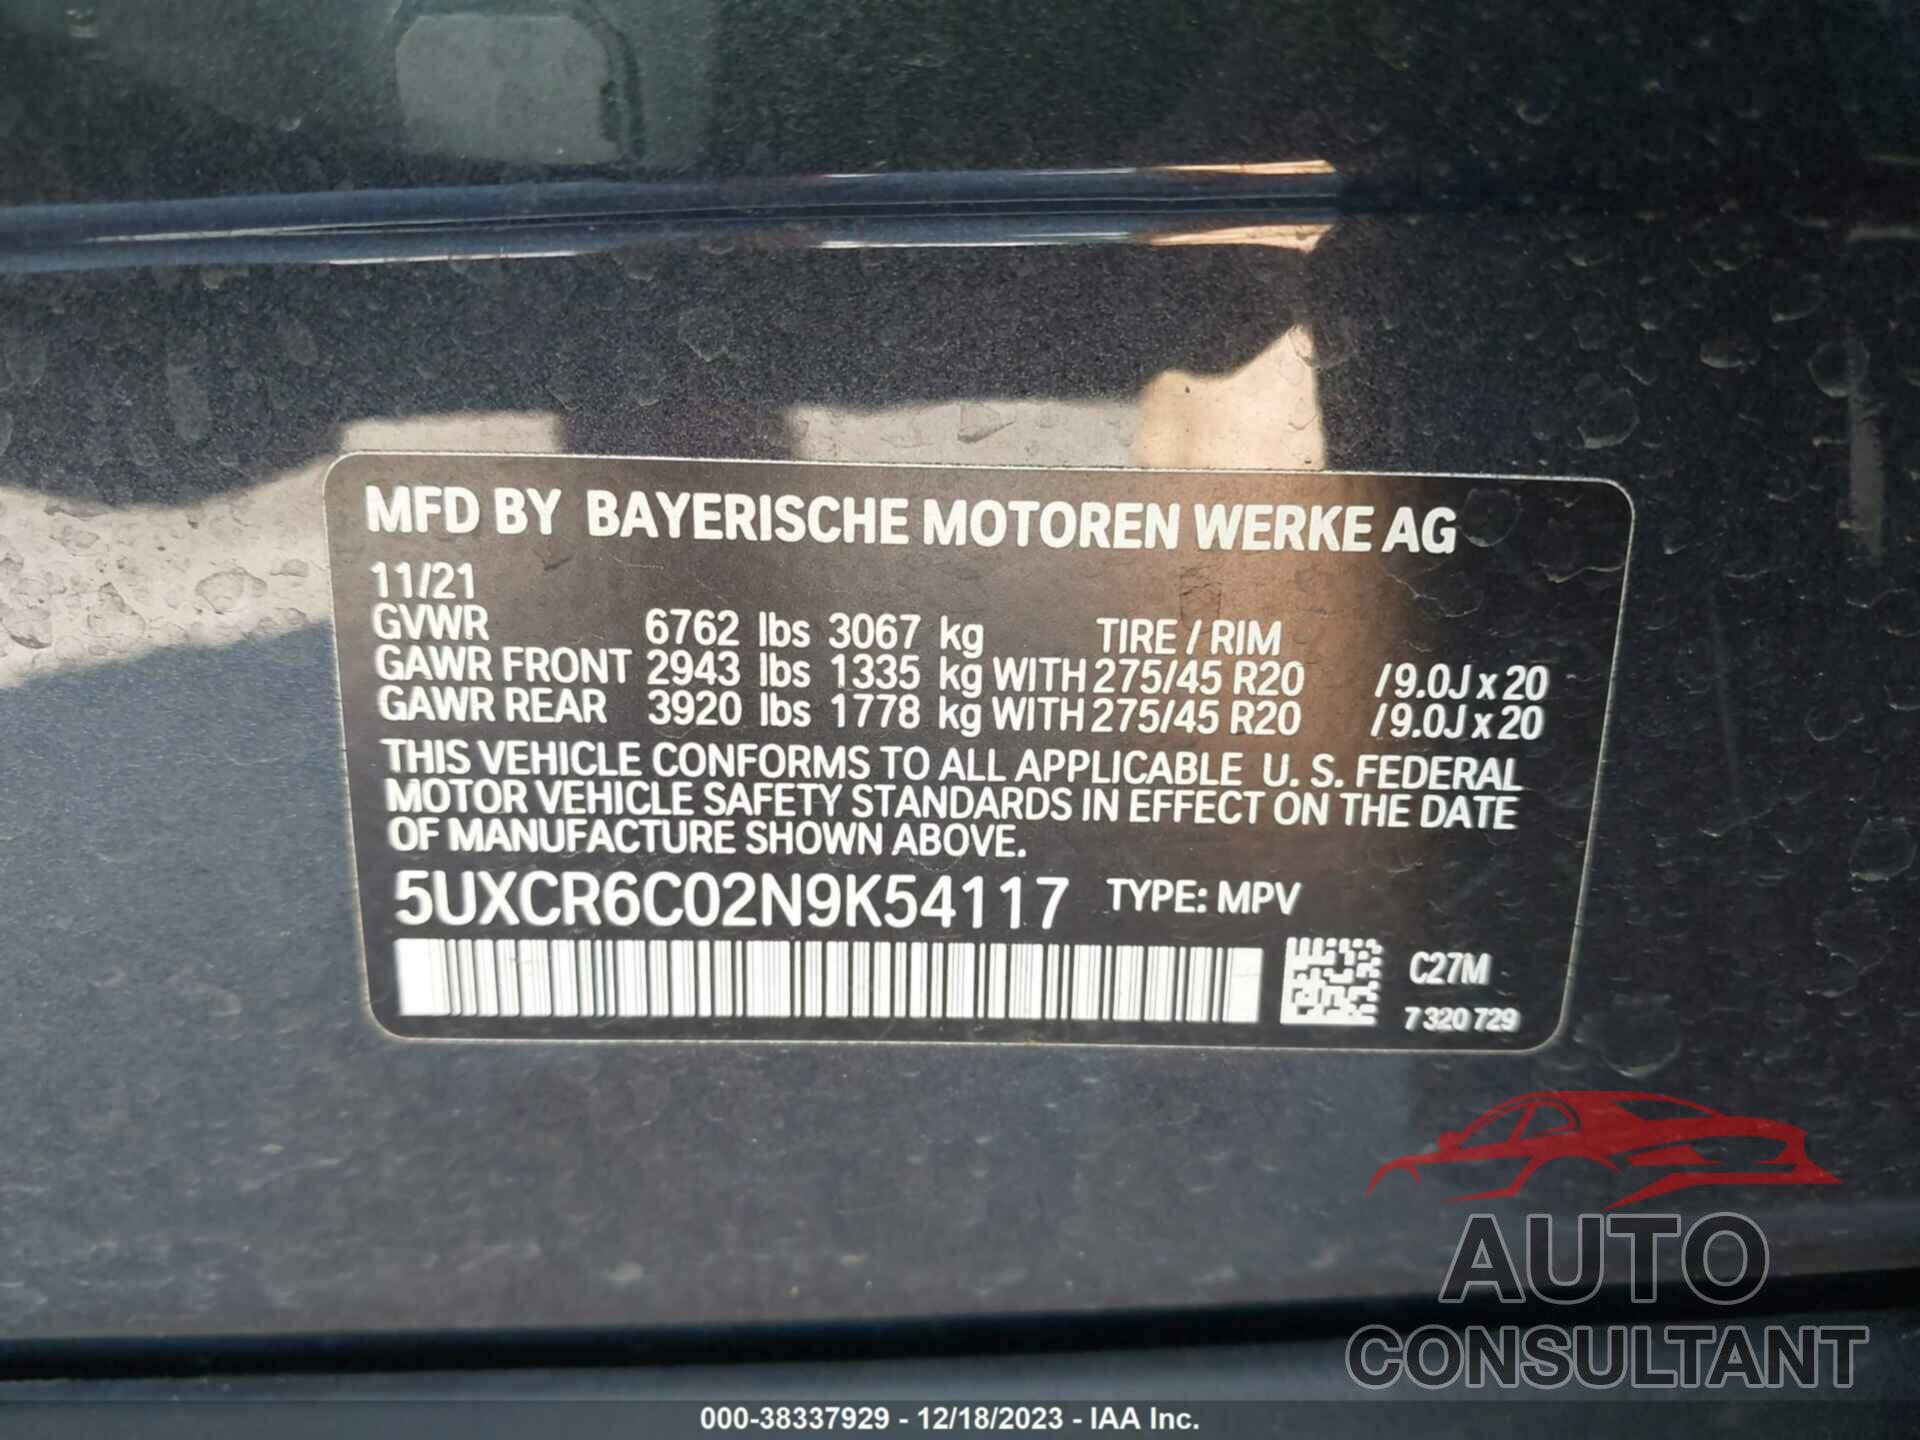 BMW X5 2022 - 5UXCR6C02N9K54117